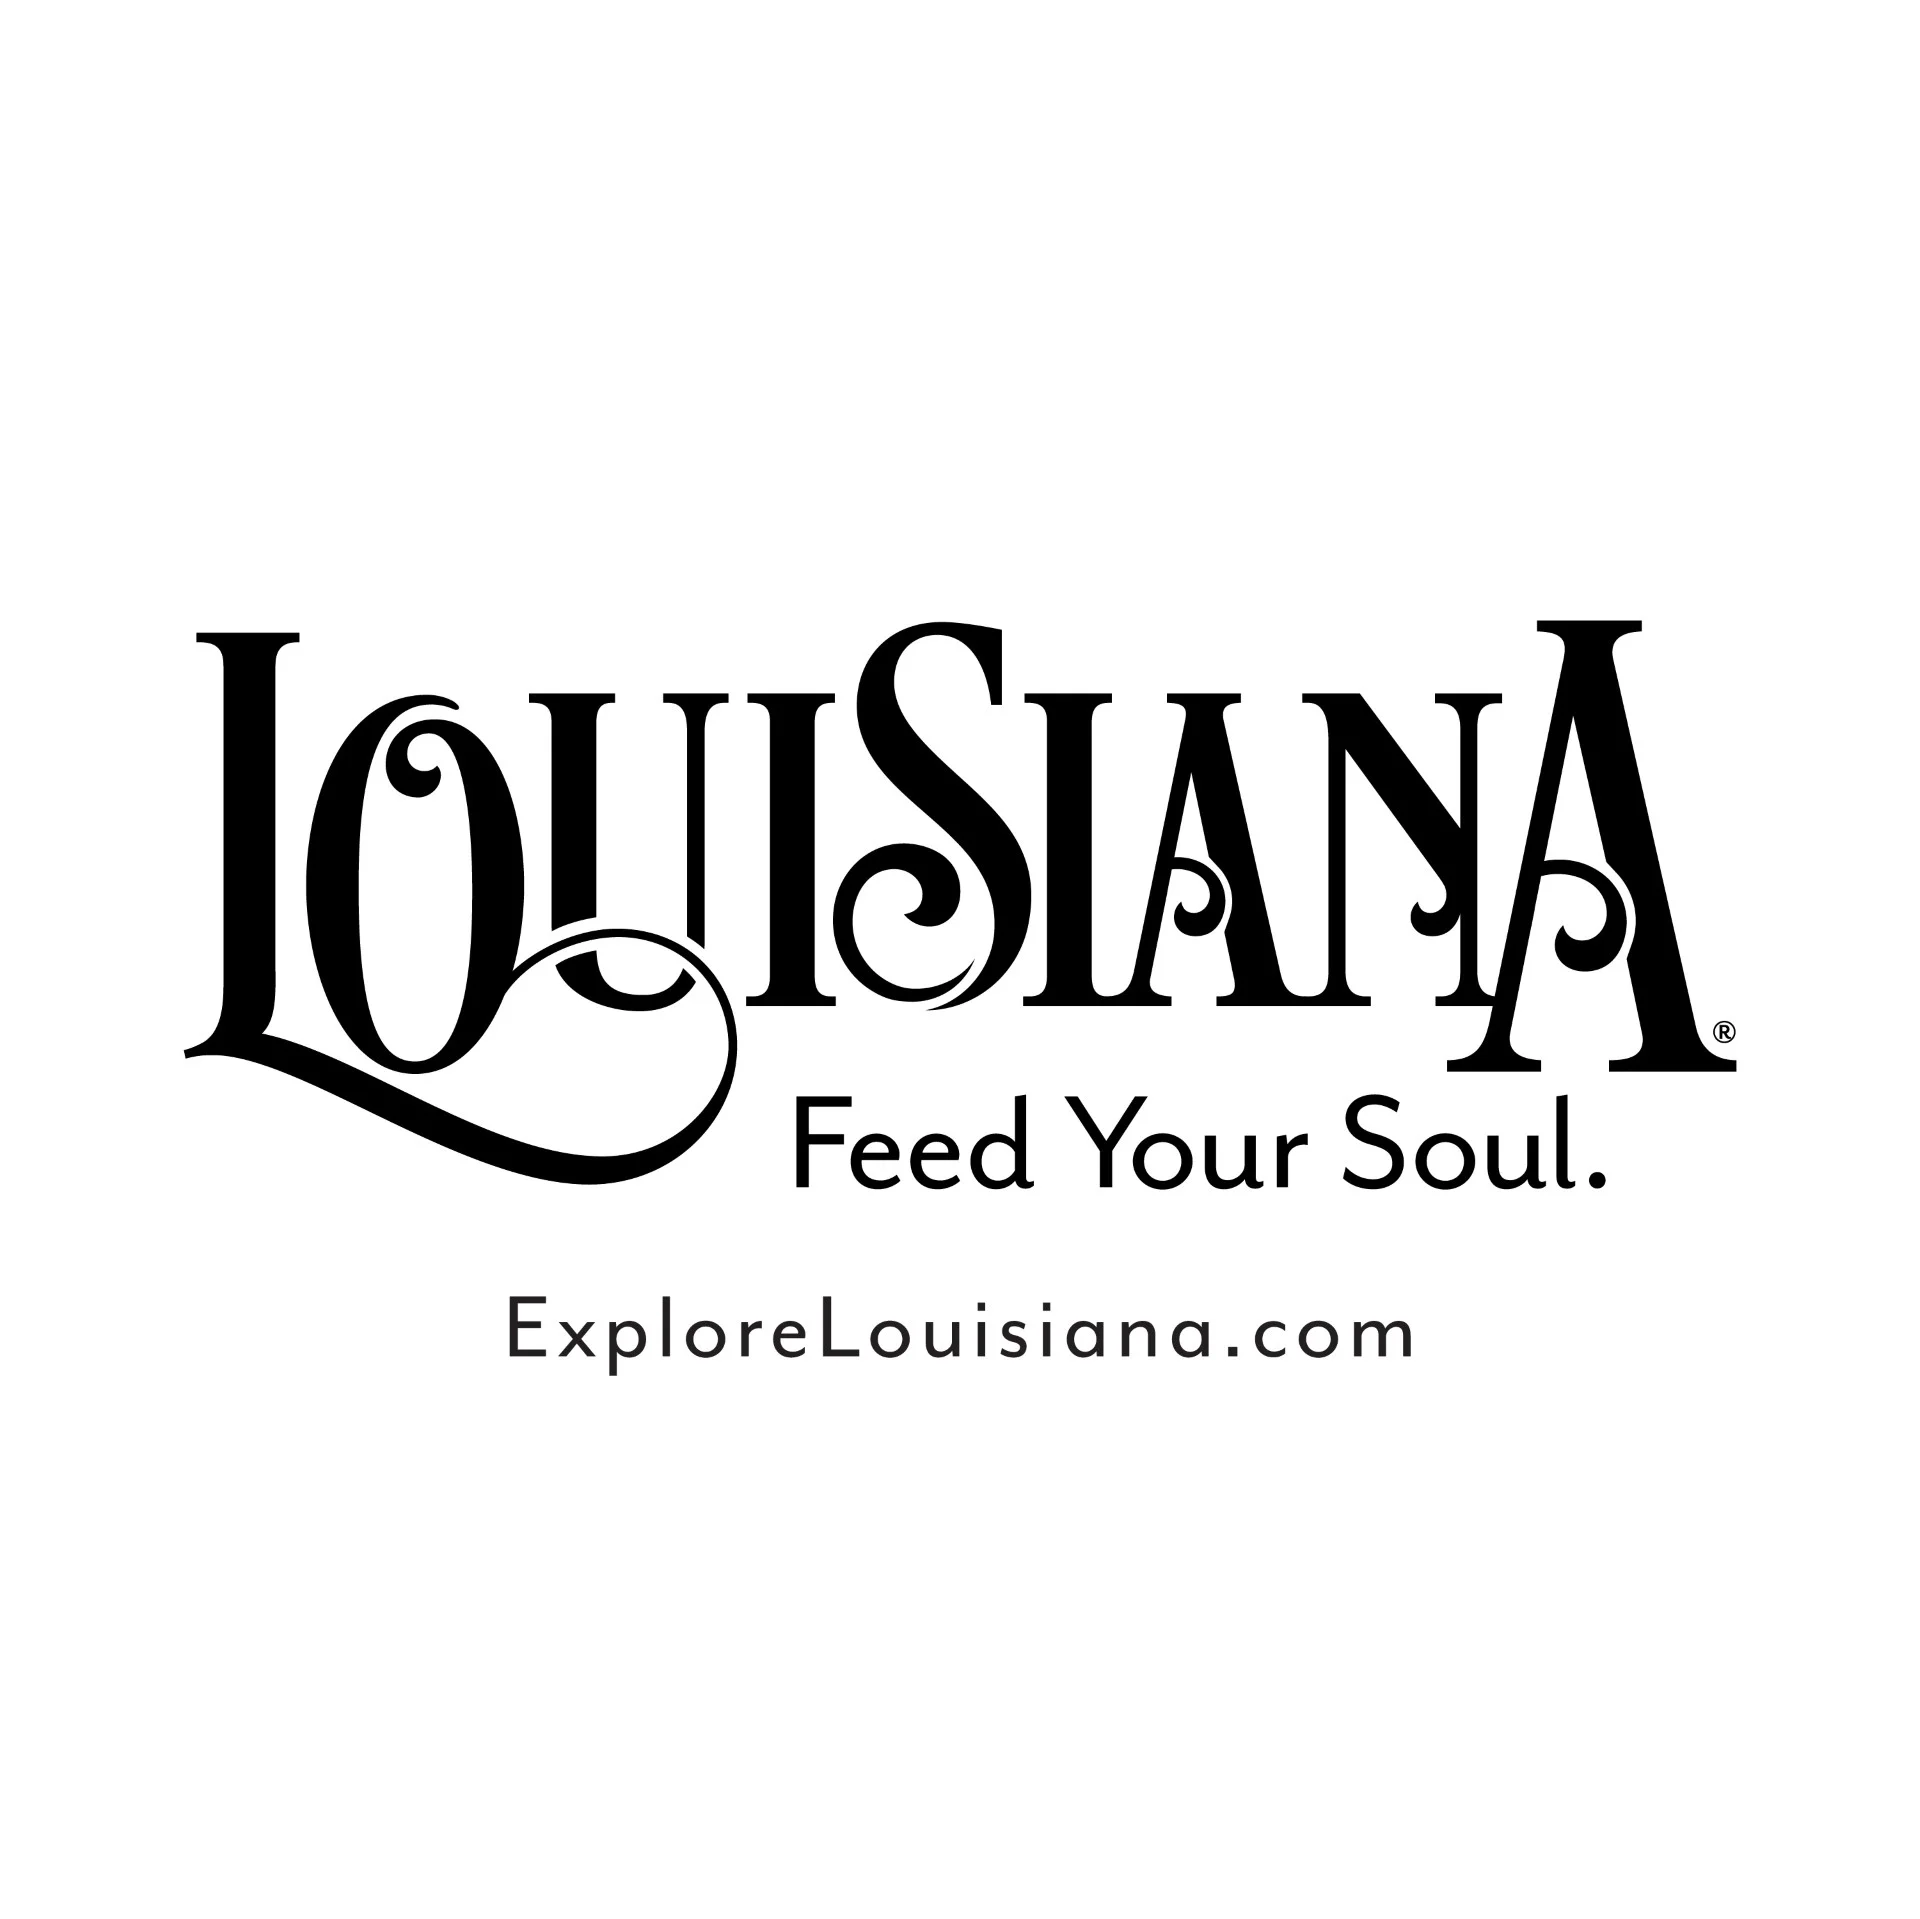 Explore Louisiana